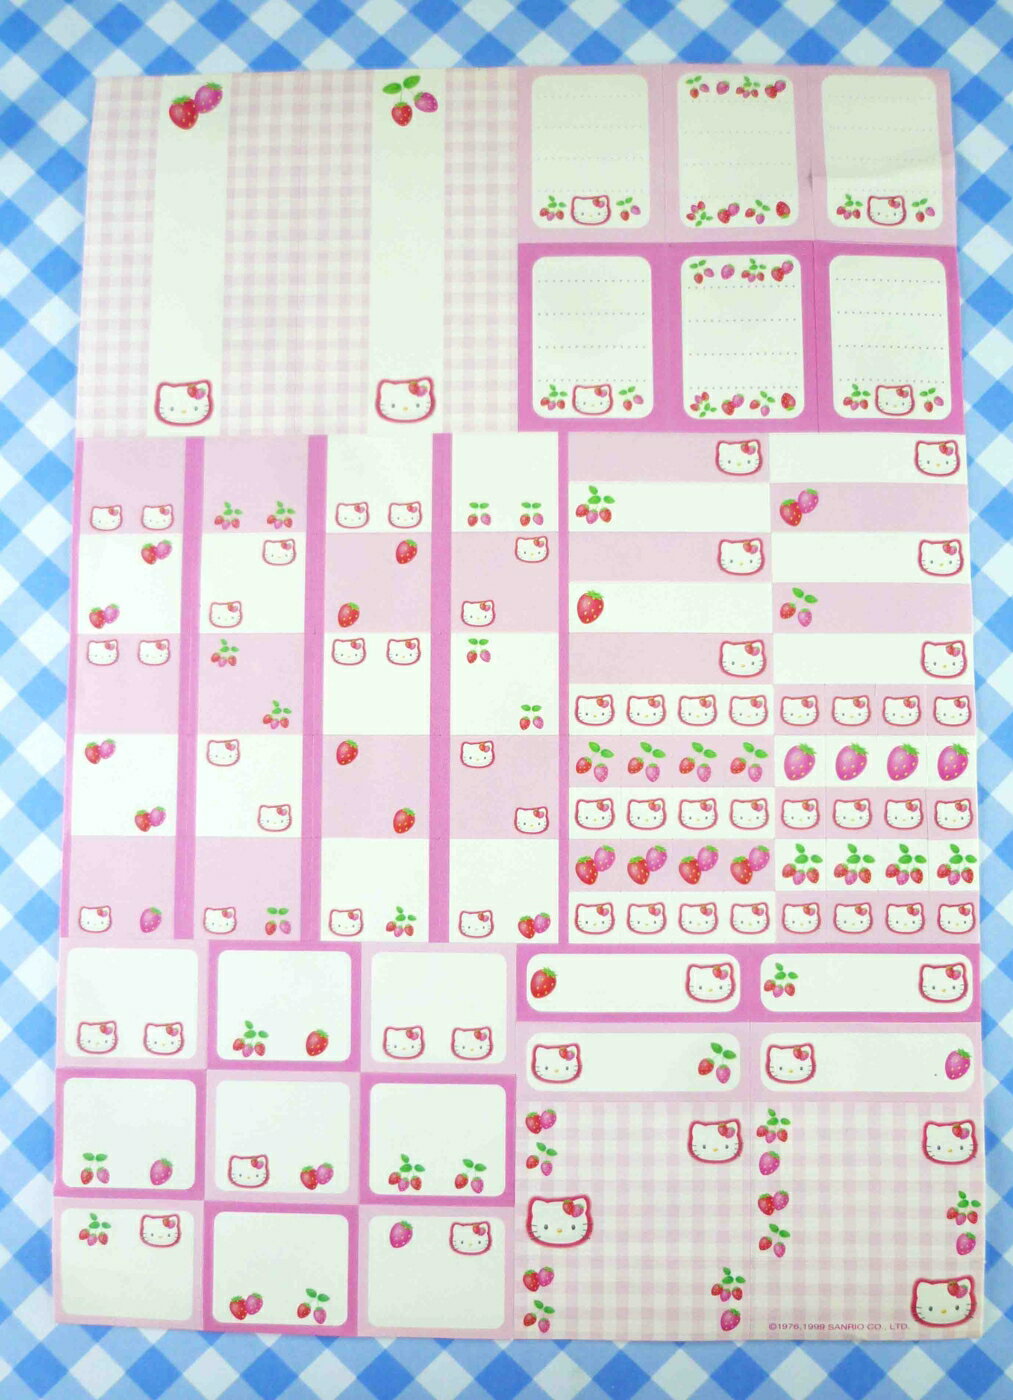 【震撼精品百貨】Hello Kitty 凱蒂貓 分類貼紙-粉草莓 震撼日式精品百貨